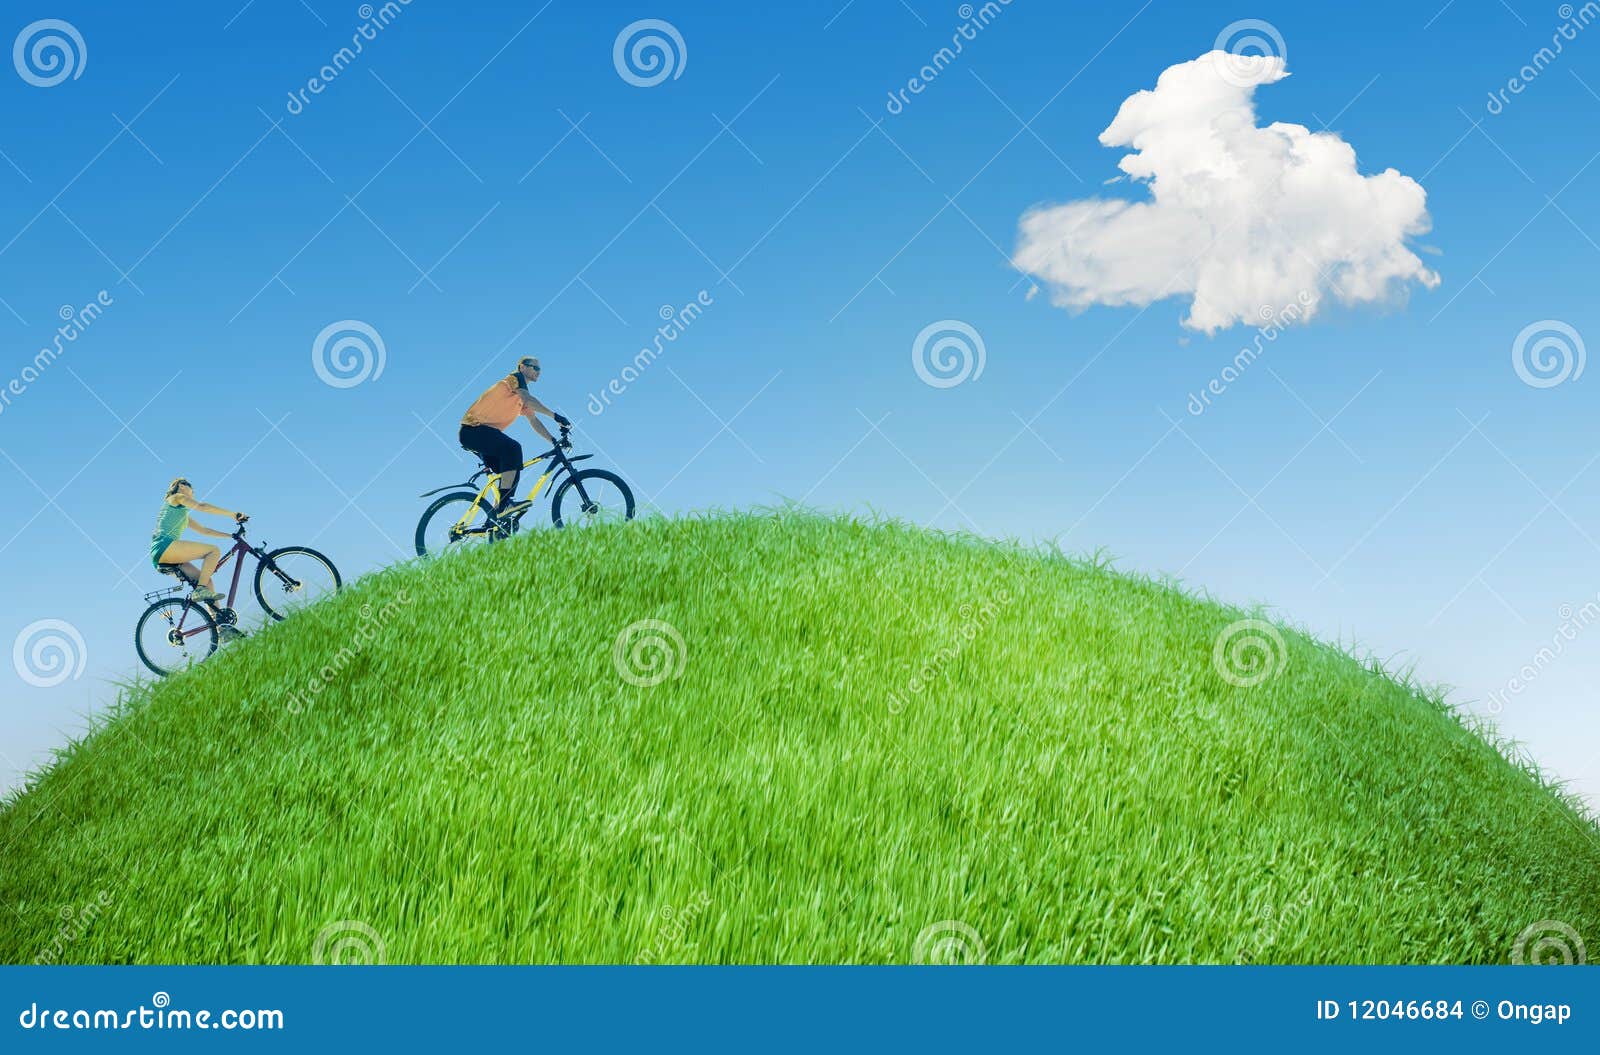 Summer dreams stock photo. Image of environment, cycling - 12046684